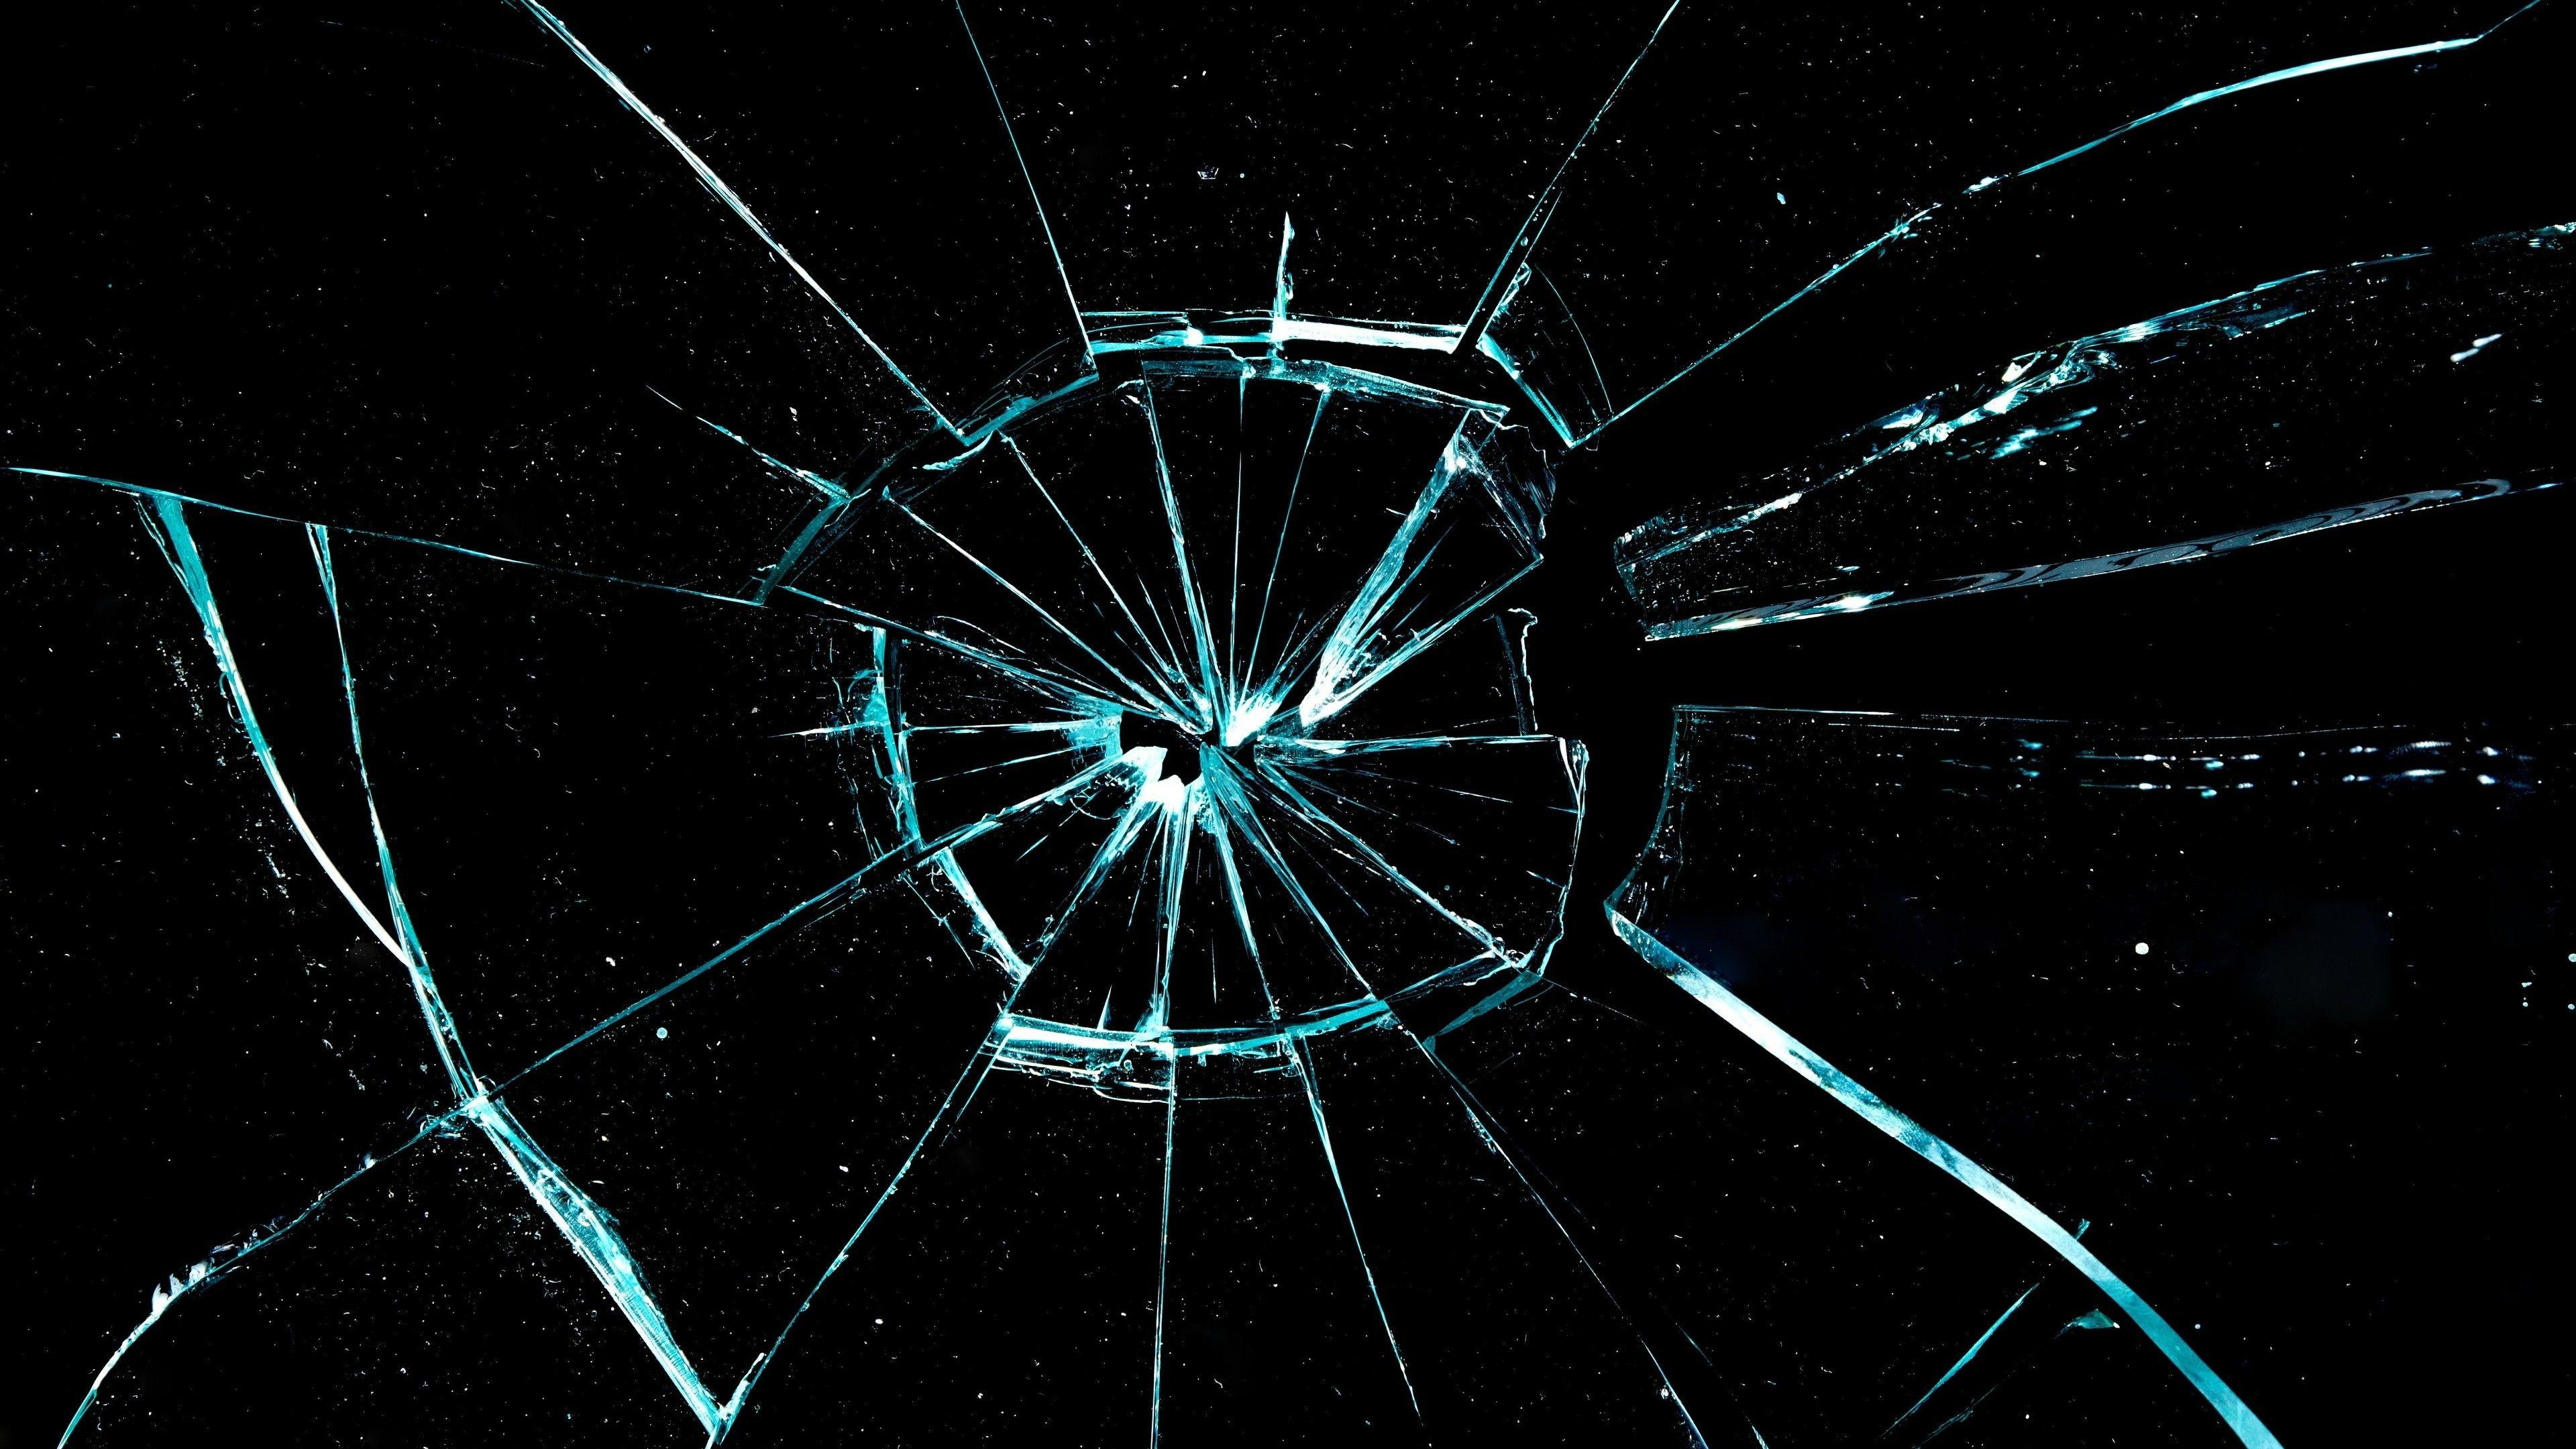 Broken Glass Wallpapers - Top Free Broken Glass Backgrounds